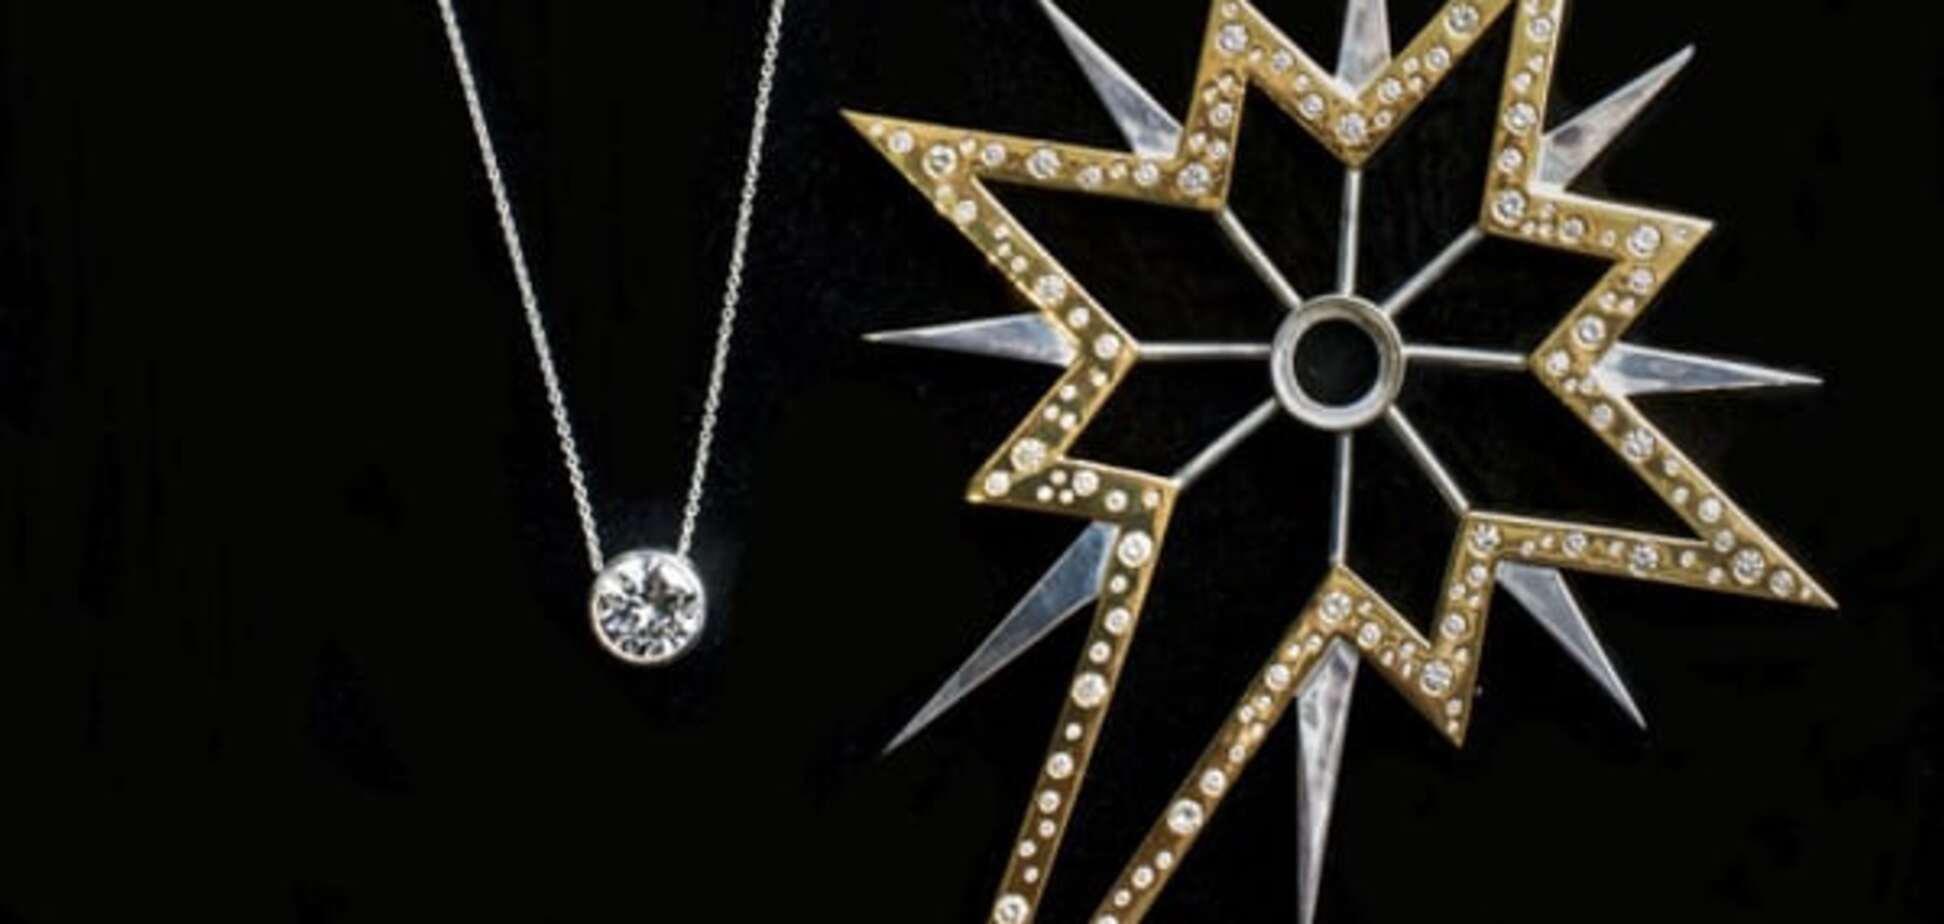 По-богатому: главную рождественскую звезду украсили 290 бриллиантами